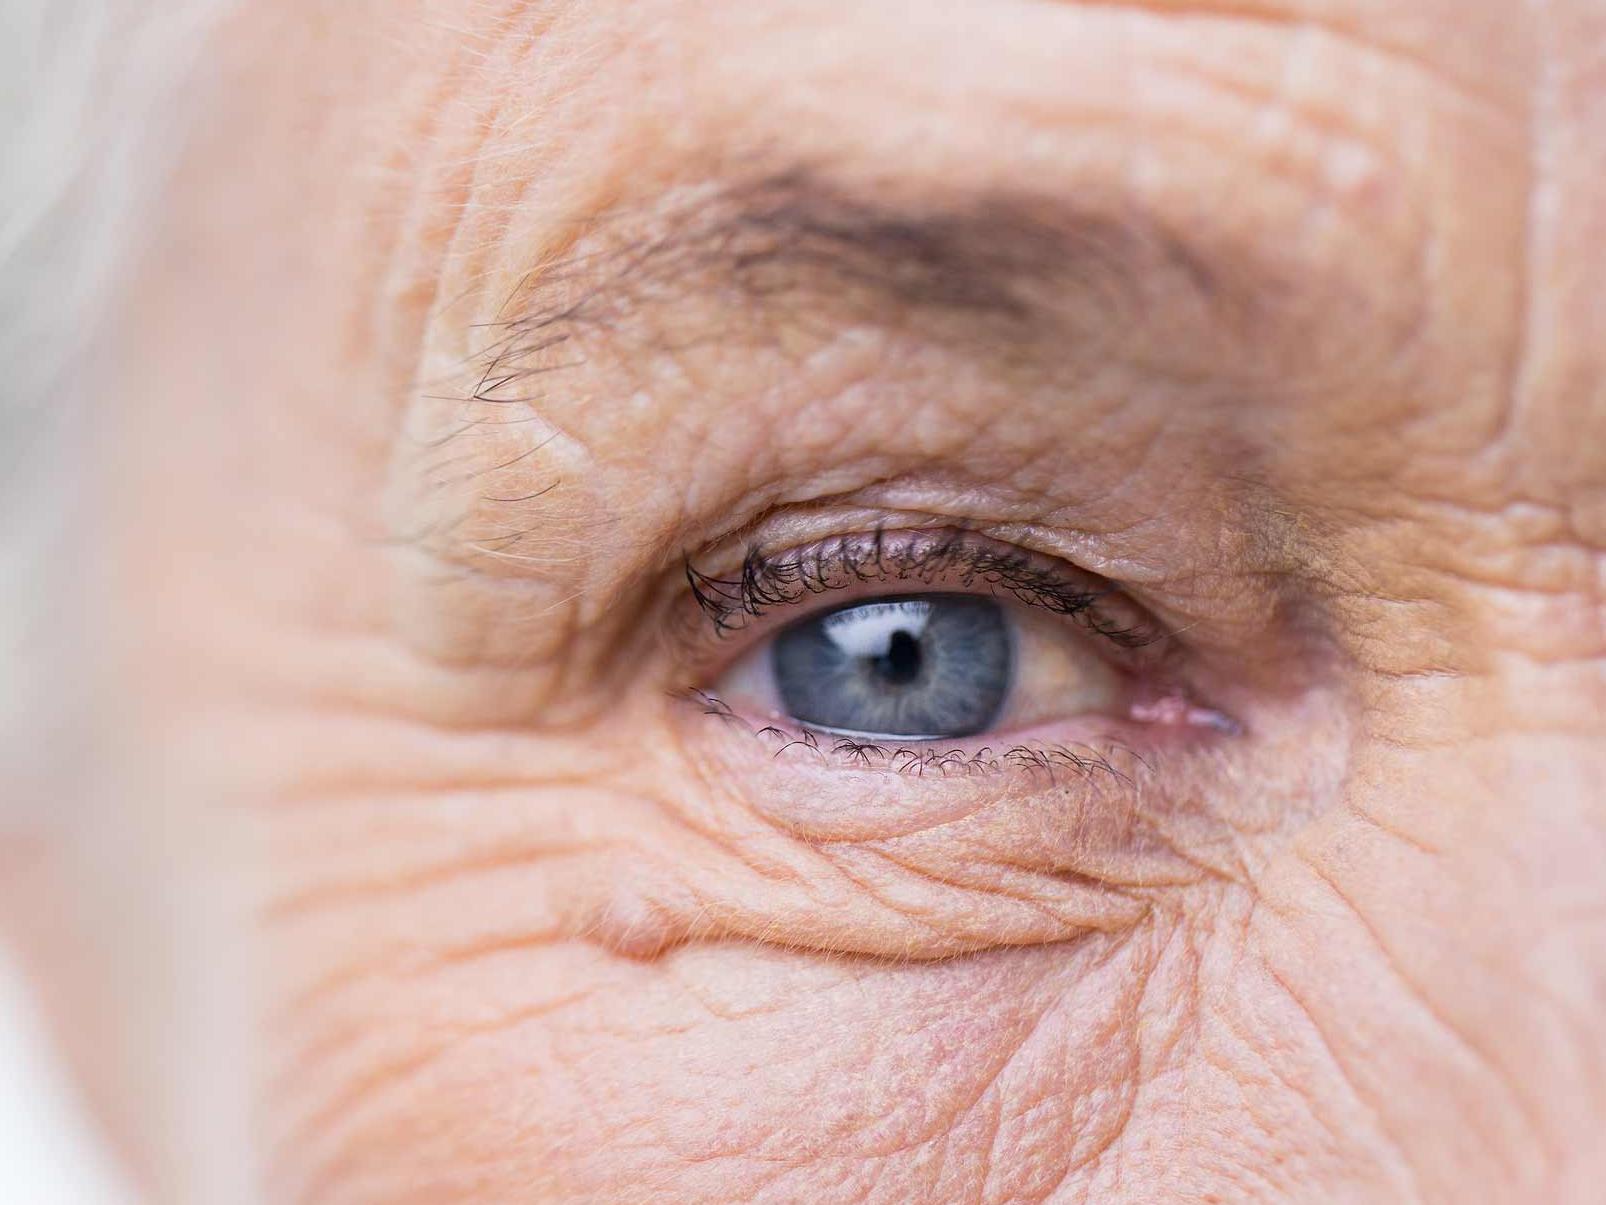 A imagem mostra um olho não saudável visto de perto, ilustrando o aspecto de possíveis danos oculares 